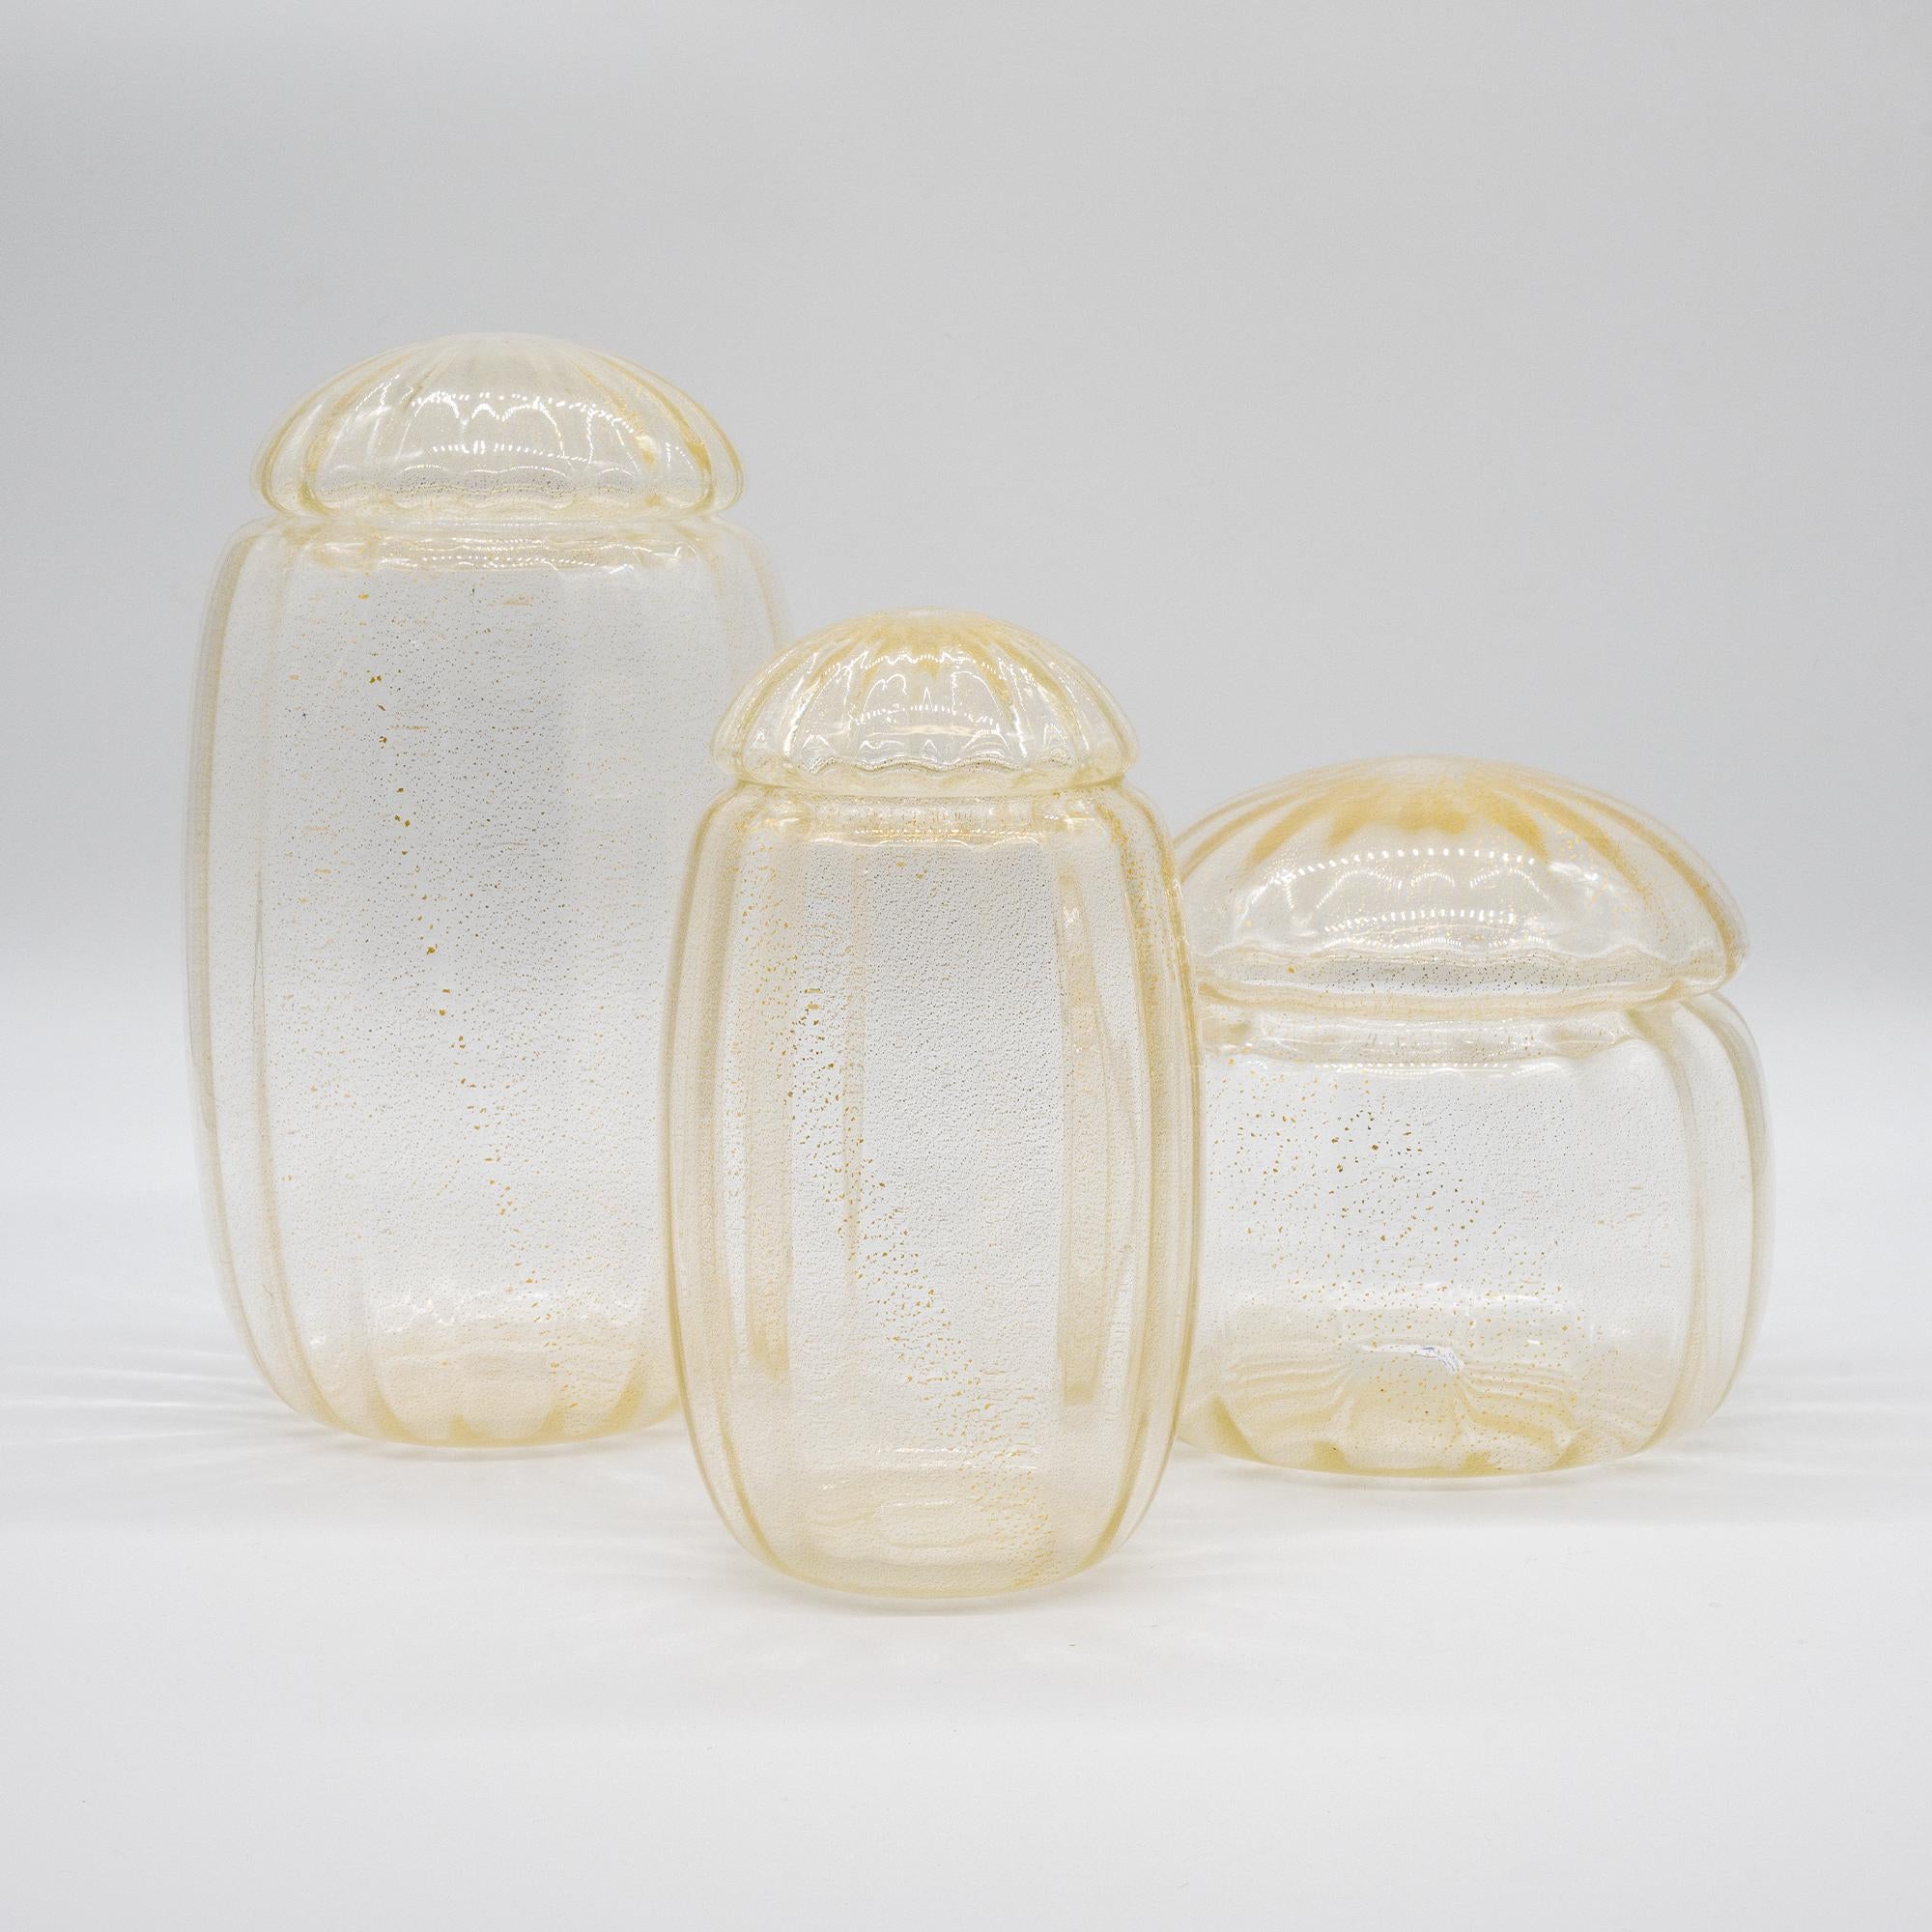 Murano Glas Potiches Vase, mundgeblasen, in Gold Farbe
Hergestellt in Murano und direkt vom Hersteller bezogen.

3er-Set in verschiedenen Größen, das große Modell hat einen Durchmesser von 18 cm und eine Höhe von 20 cm
Can verwendet werden, um